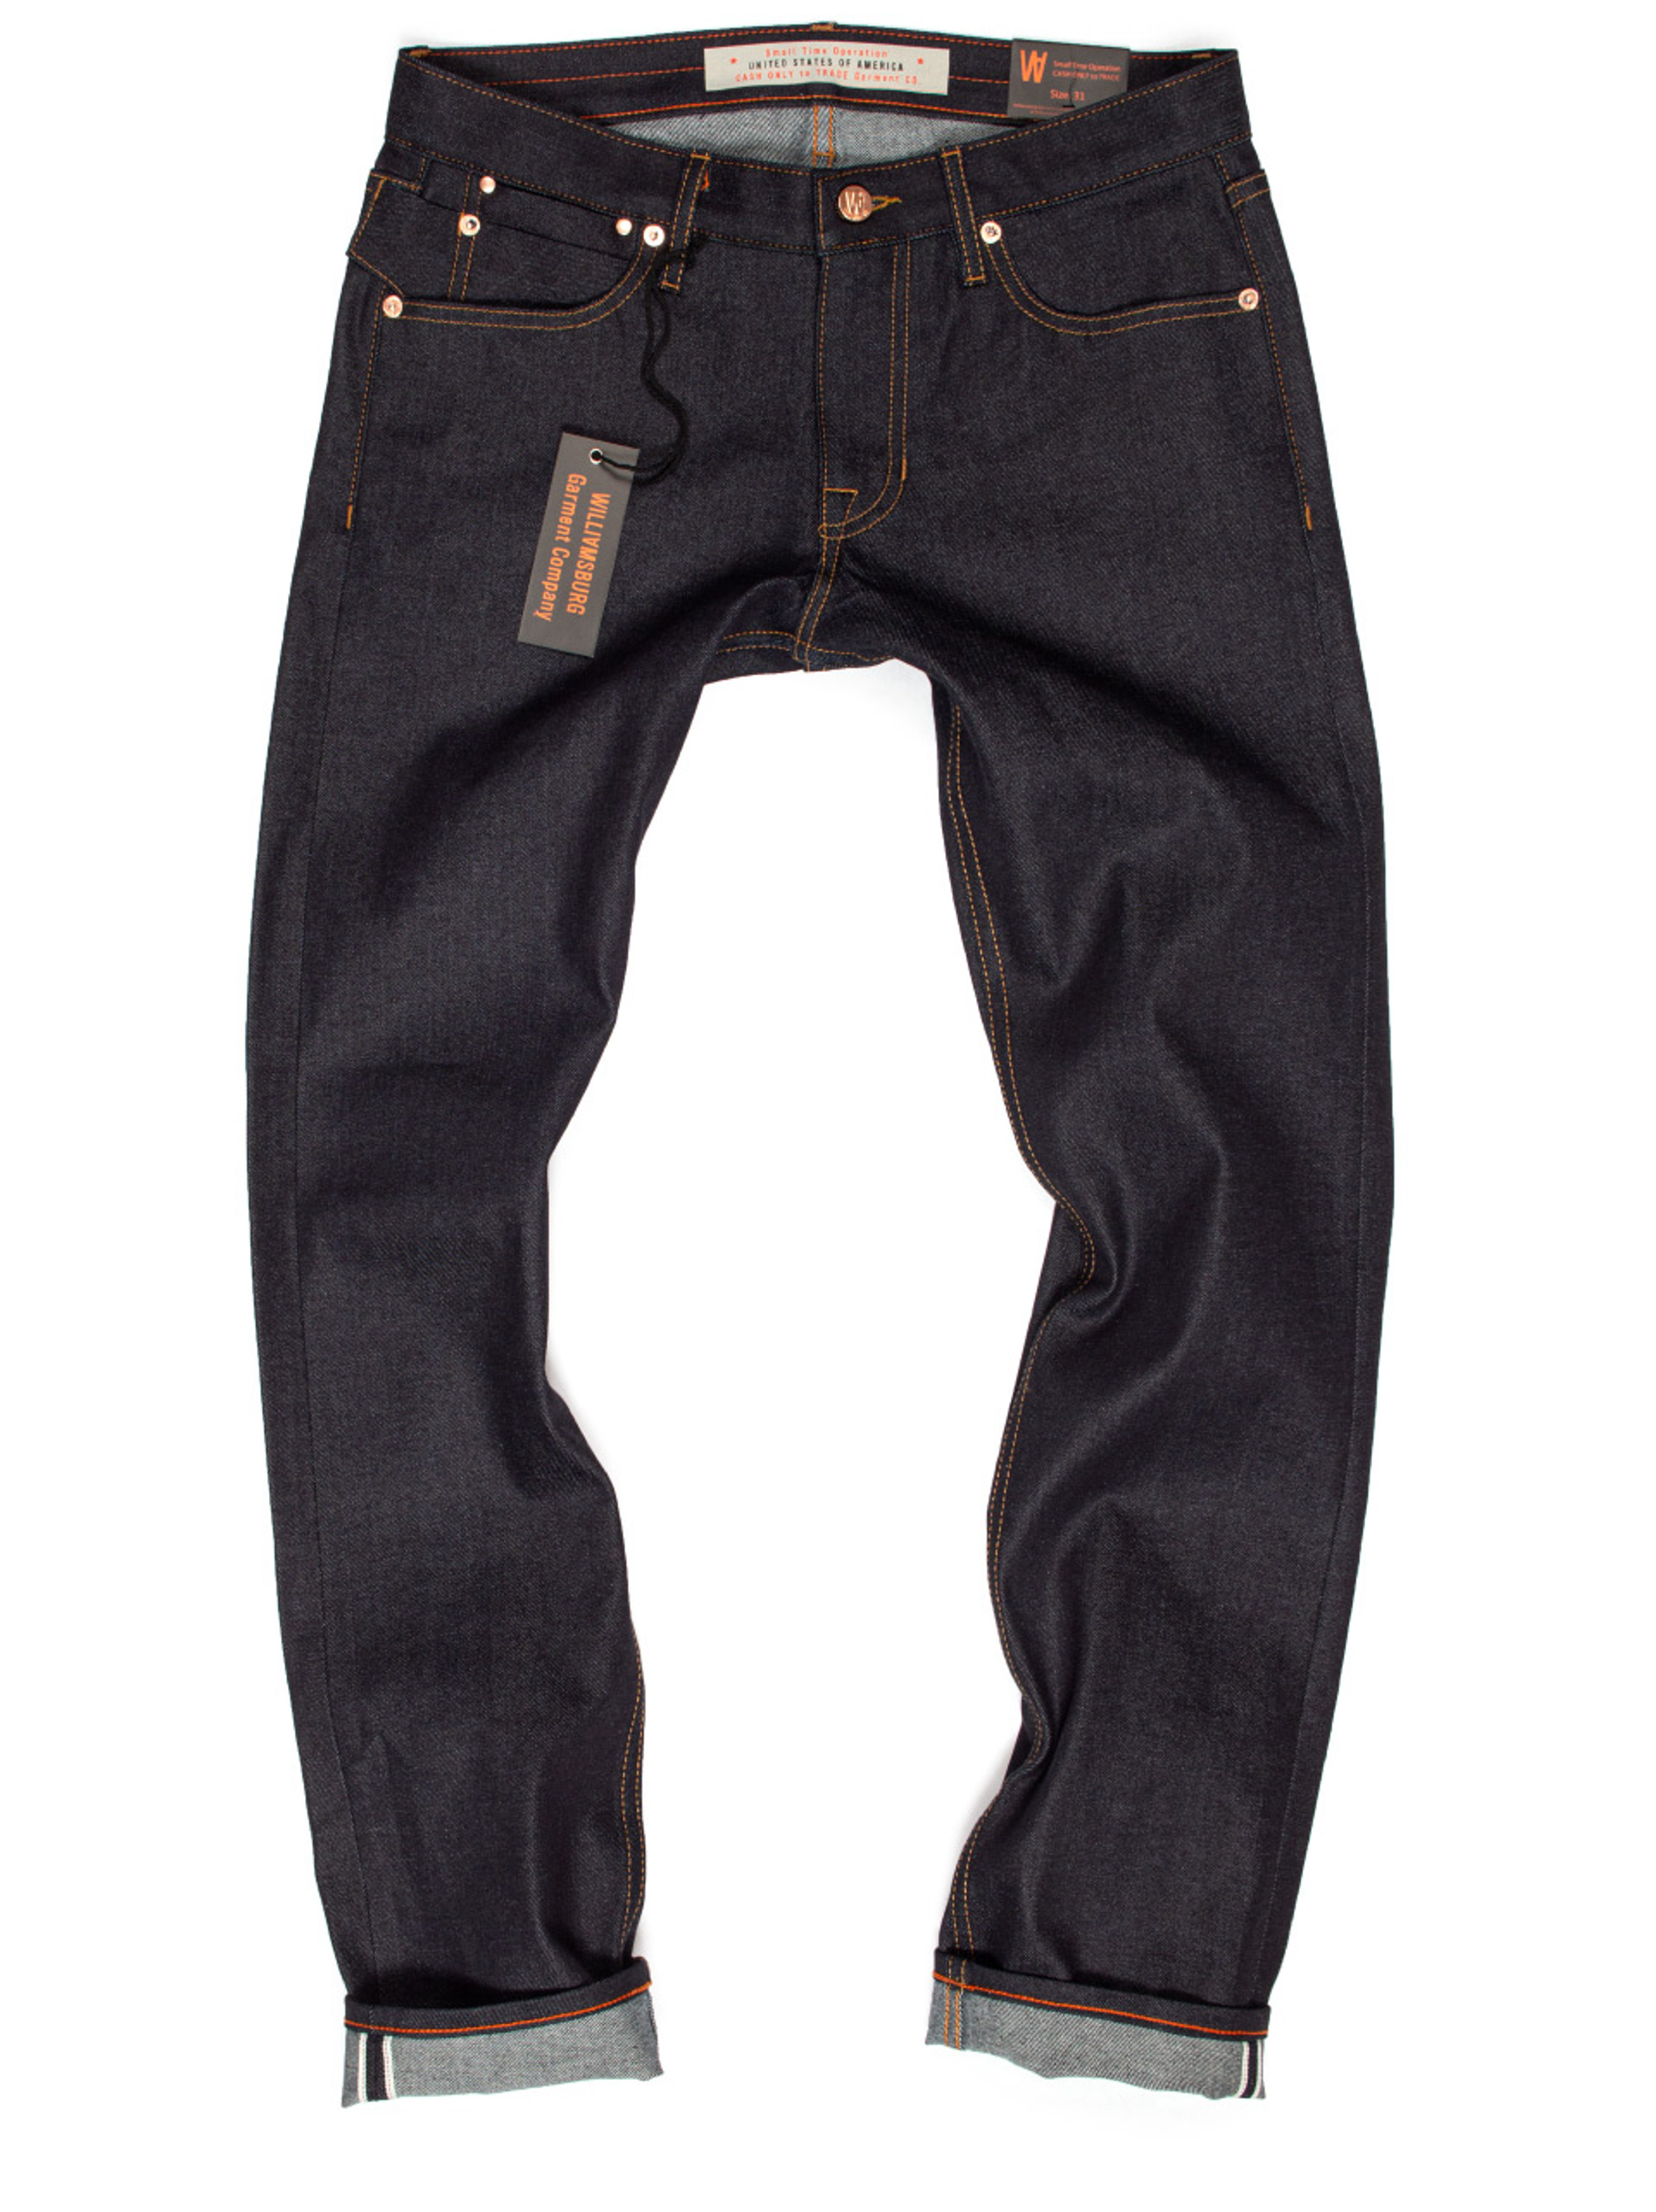 Men's Skinny Selvedge Custom Made Jeans | Williamsburg Garment Co.